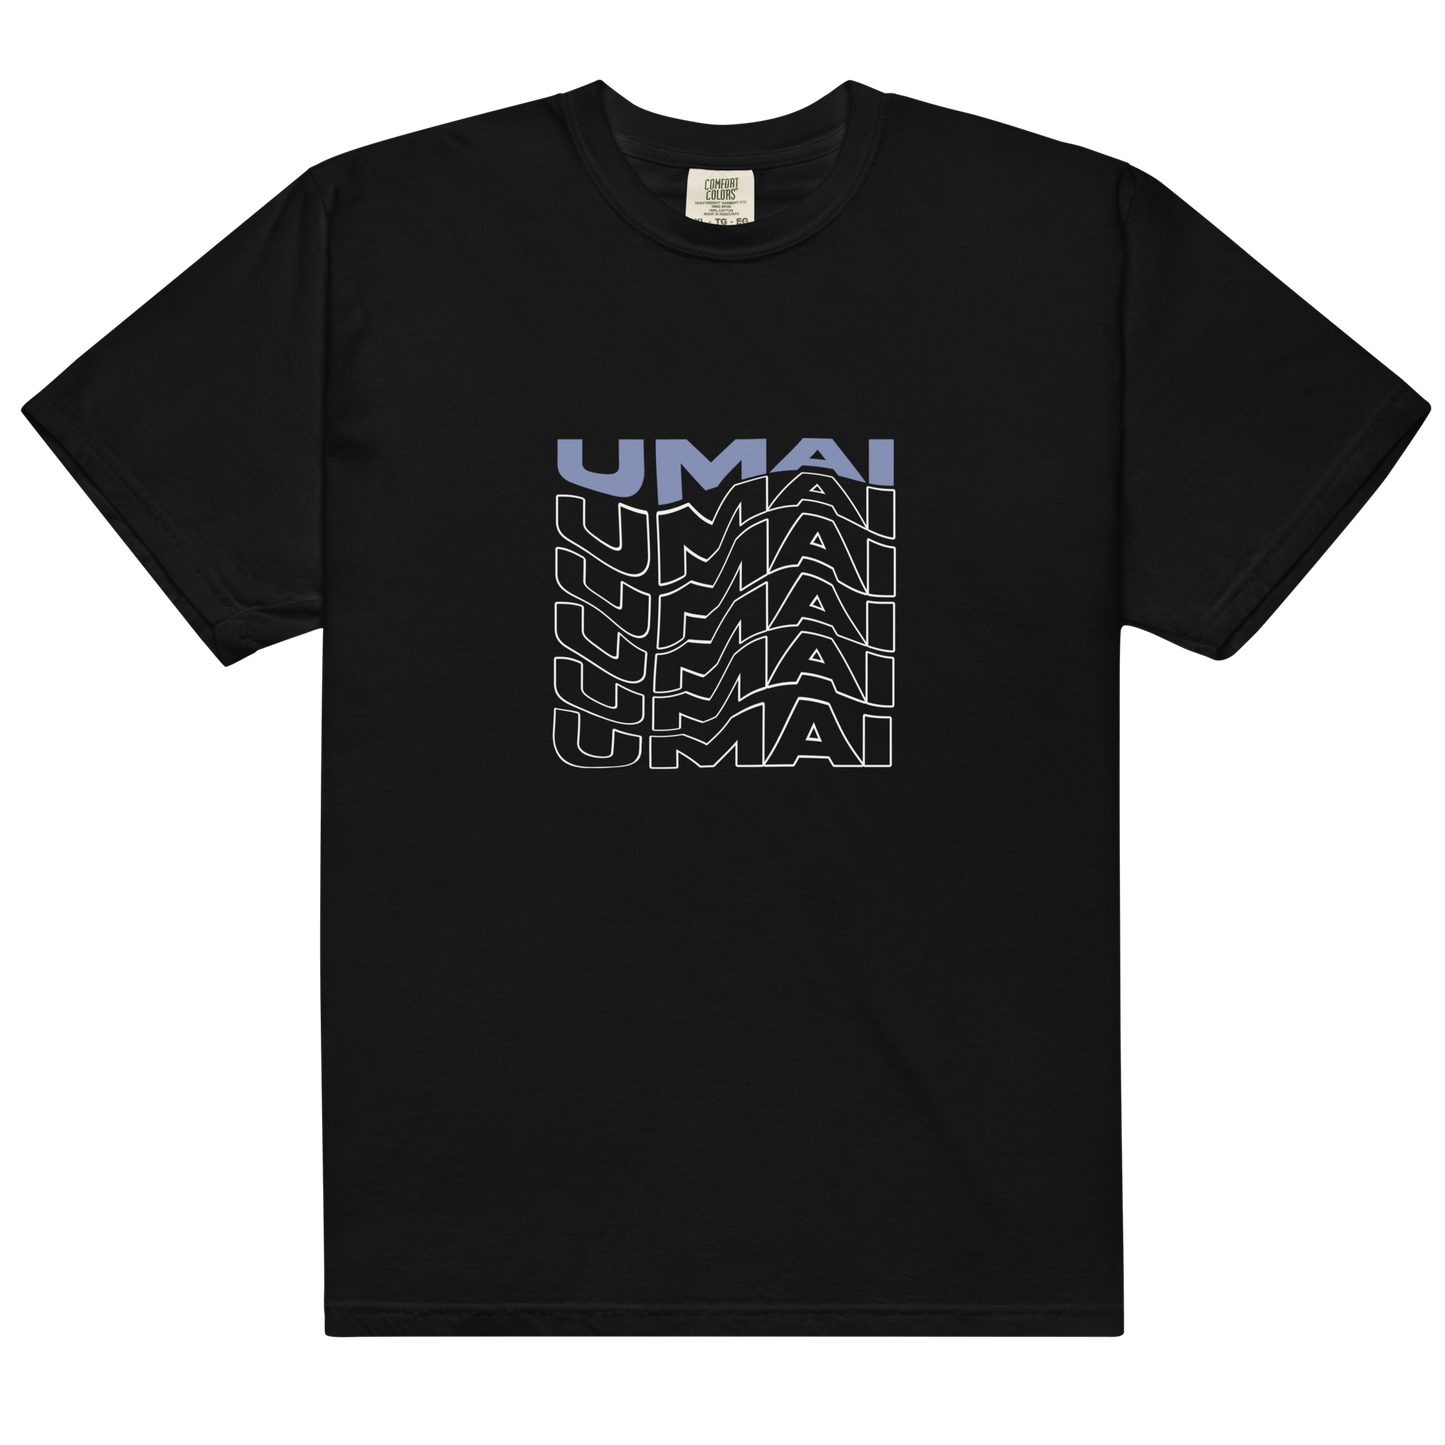 UMAIX6 • Heavyweight T-Shirt